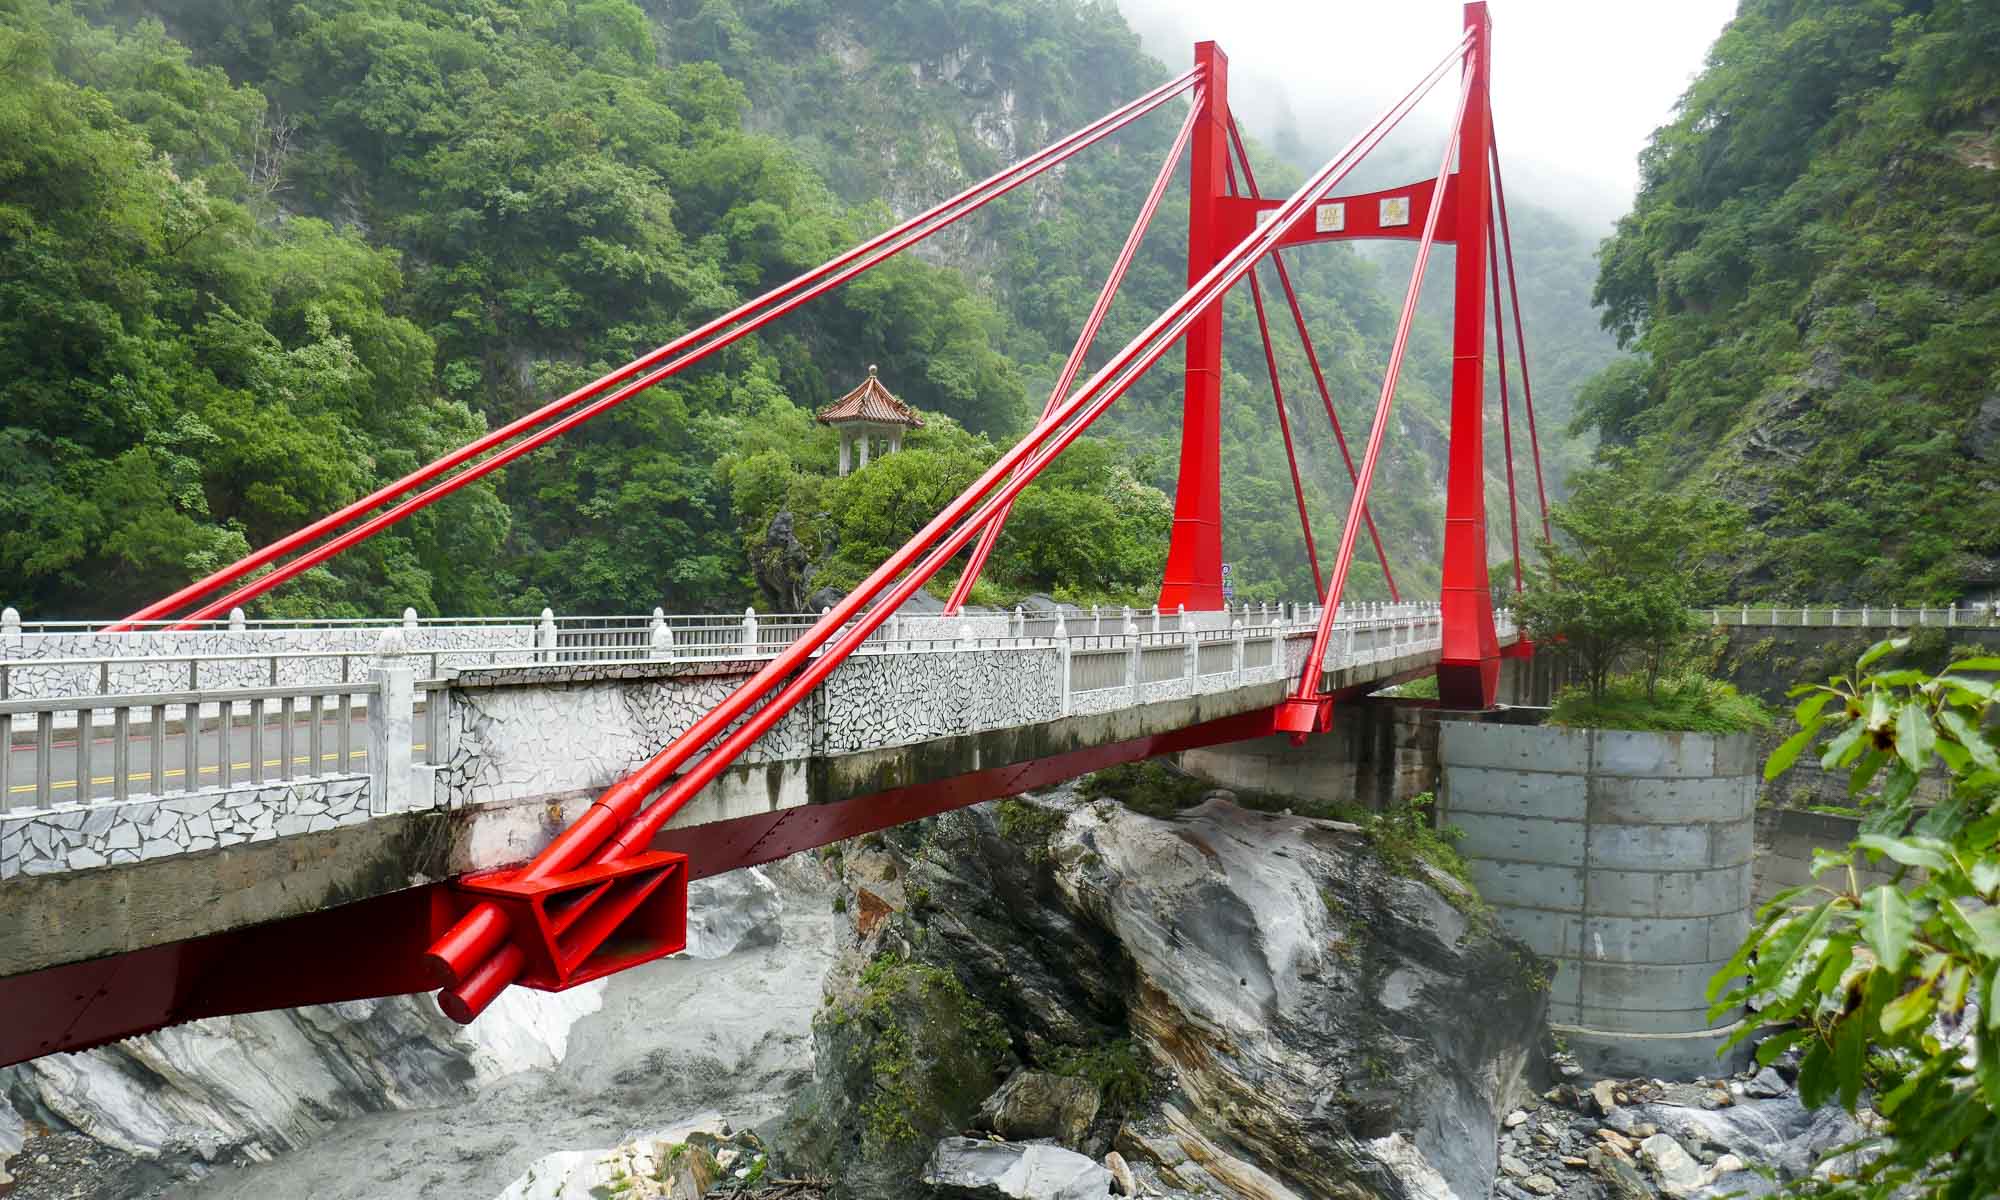 Cihmu Bridge over the frog rock